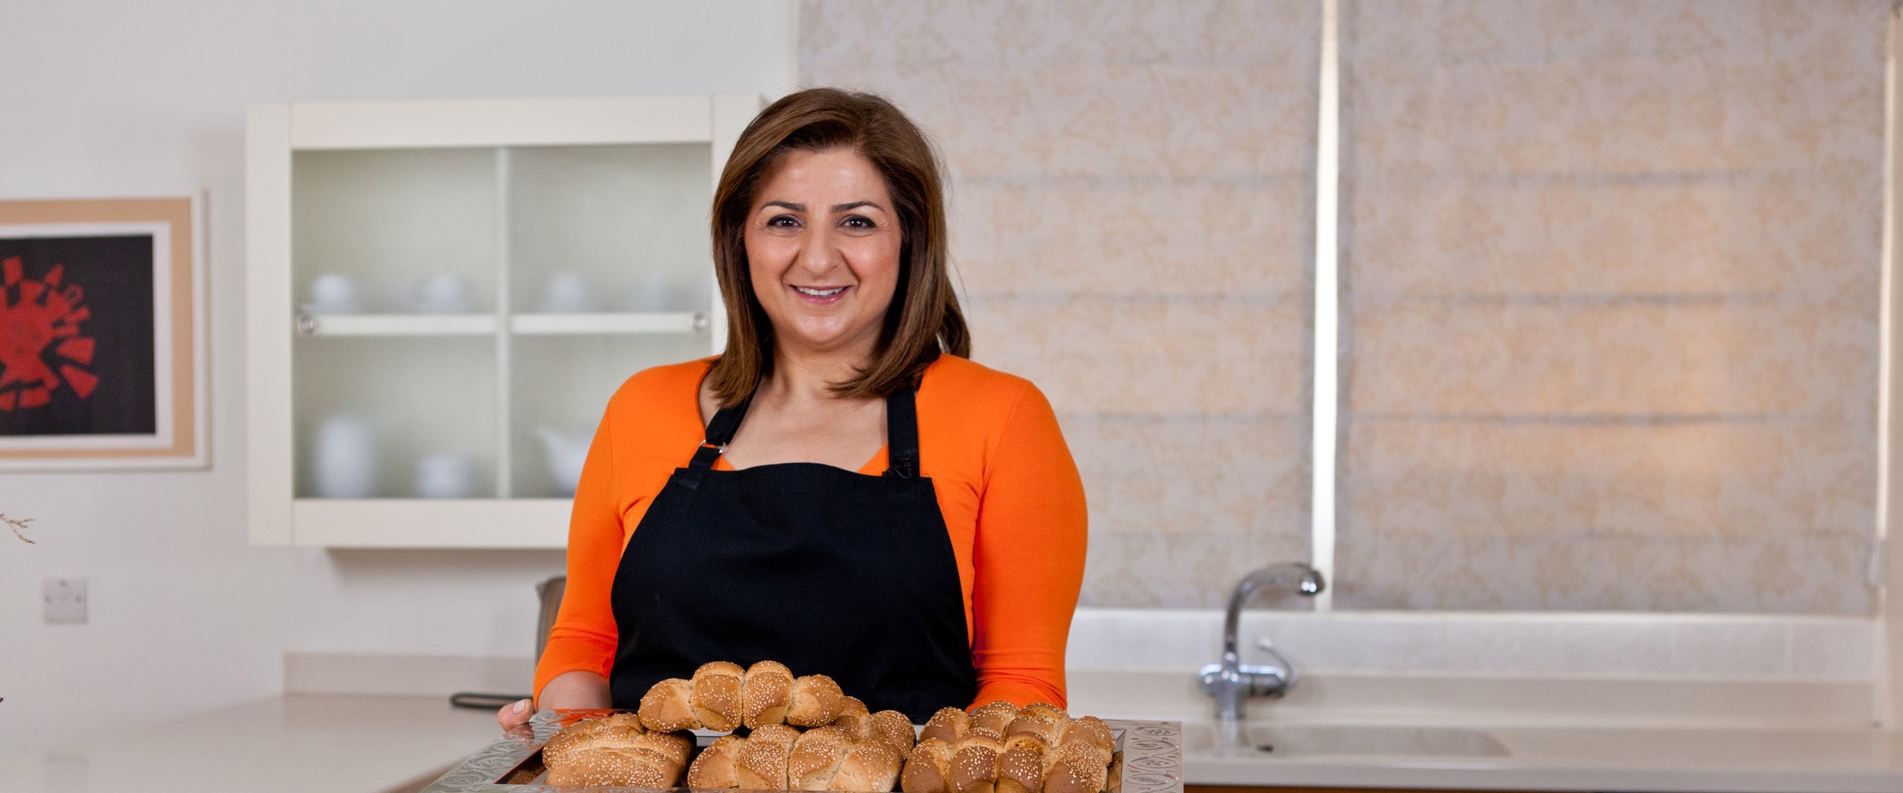 Кипрская кухня с Мариленой: Пасхальный хлеб кулури